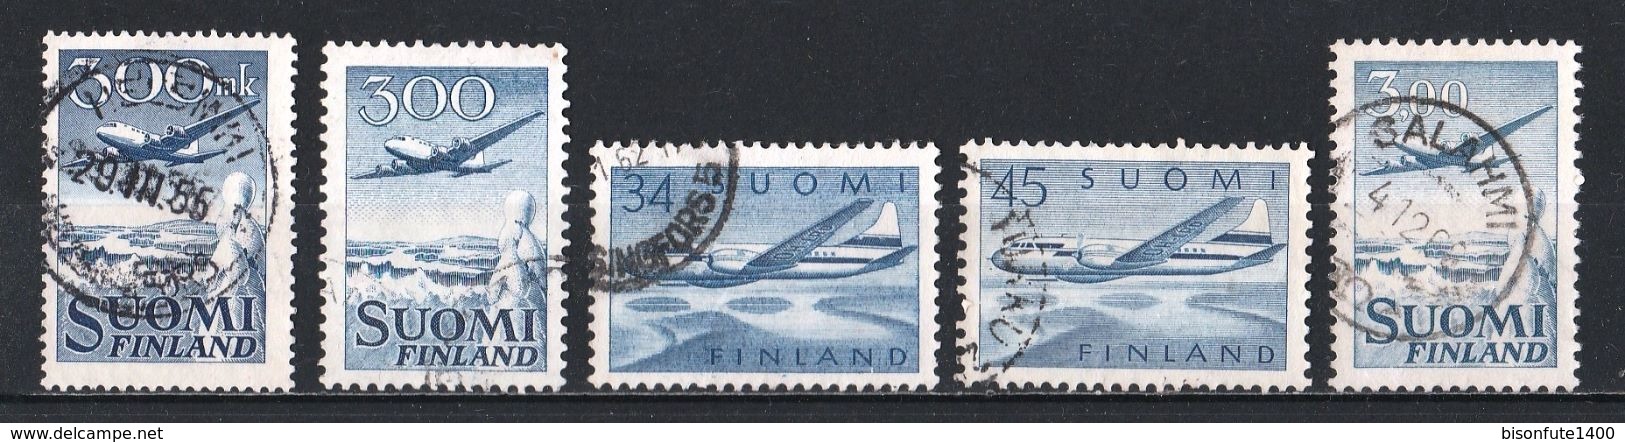 FINLANDE Poste Aérienne : Timbres Yvert & Tellier N° 3 - 4 - 5 - 6 - 9 - 10 Et 11. - Gebruikt